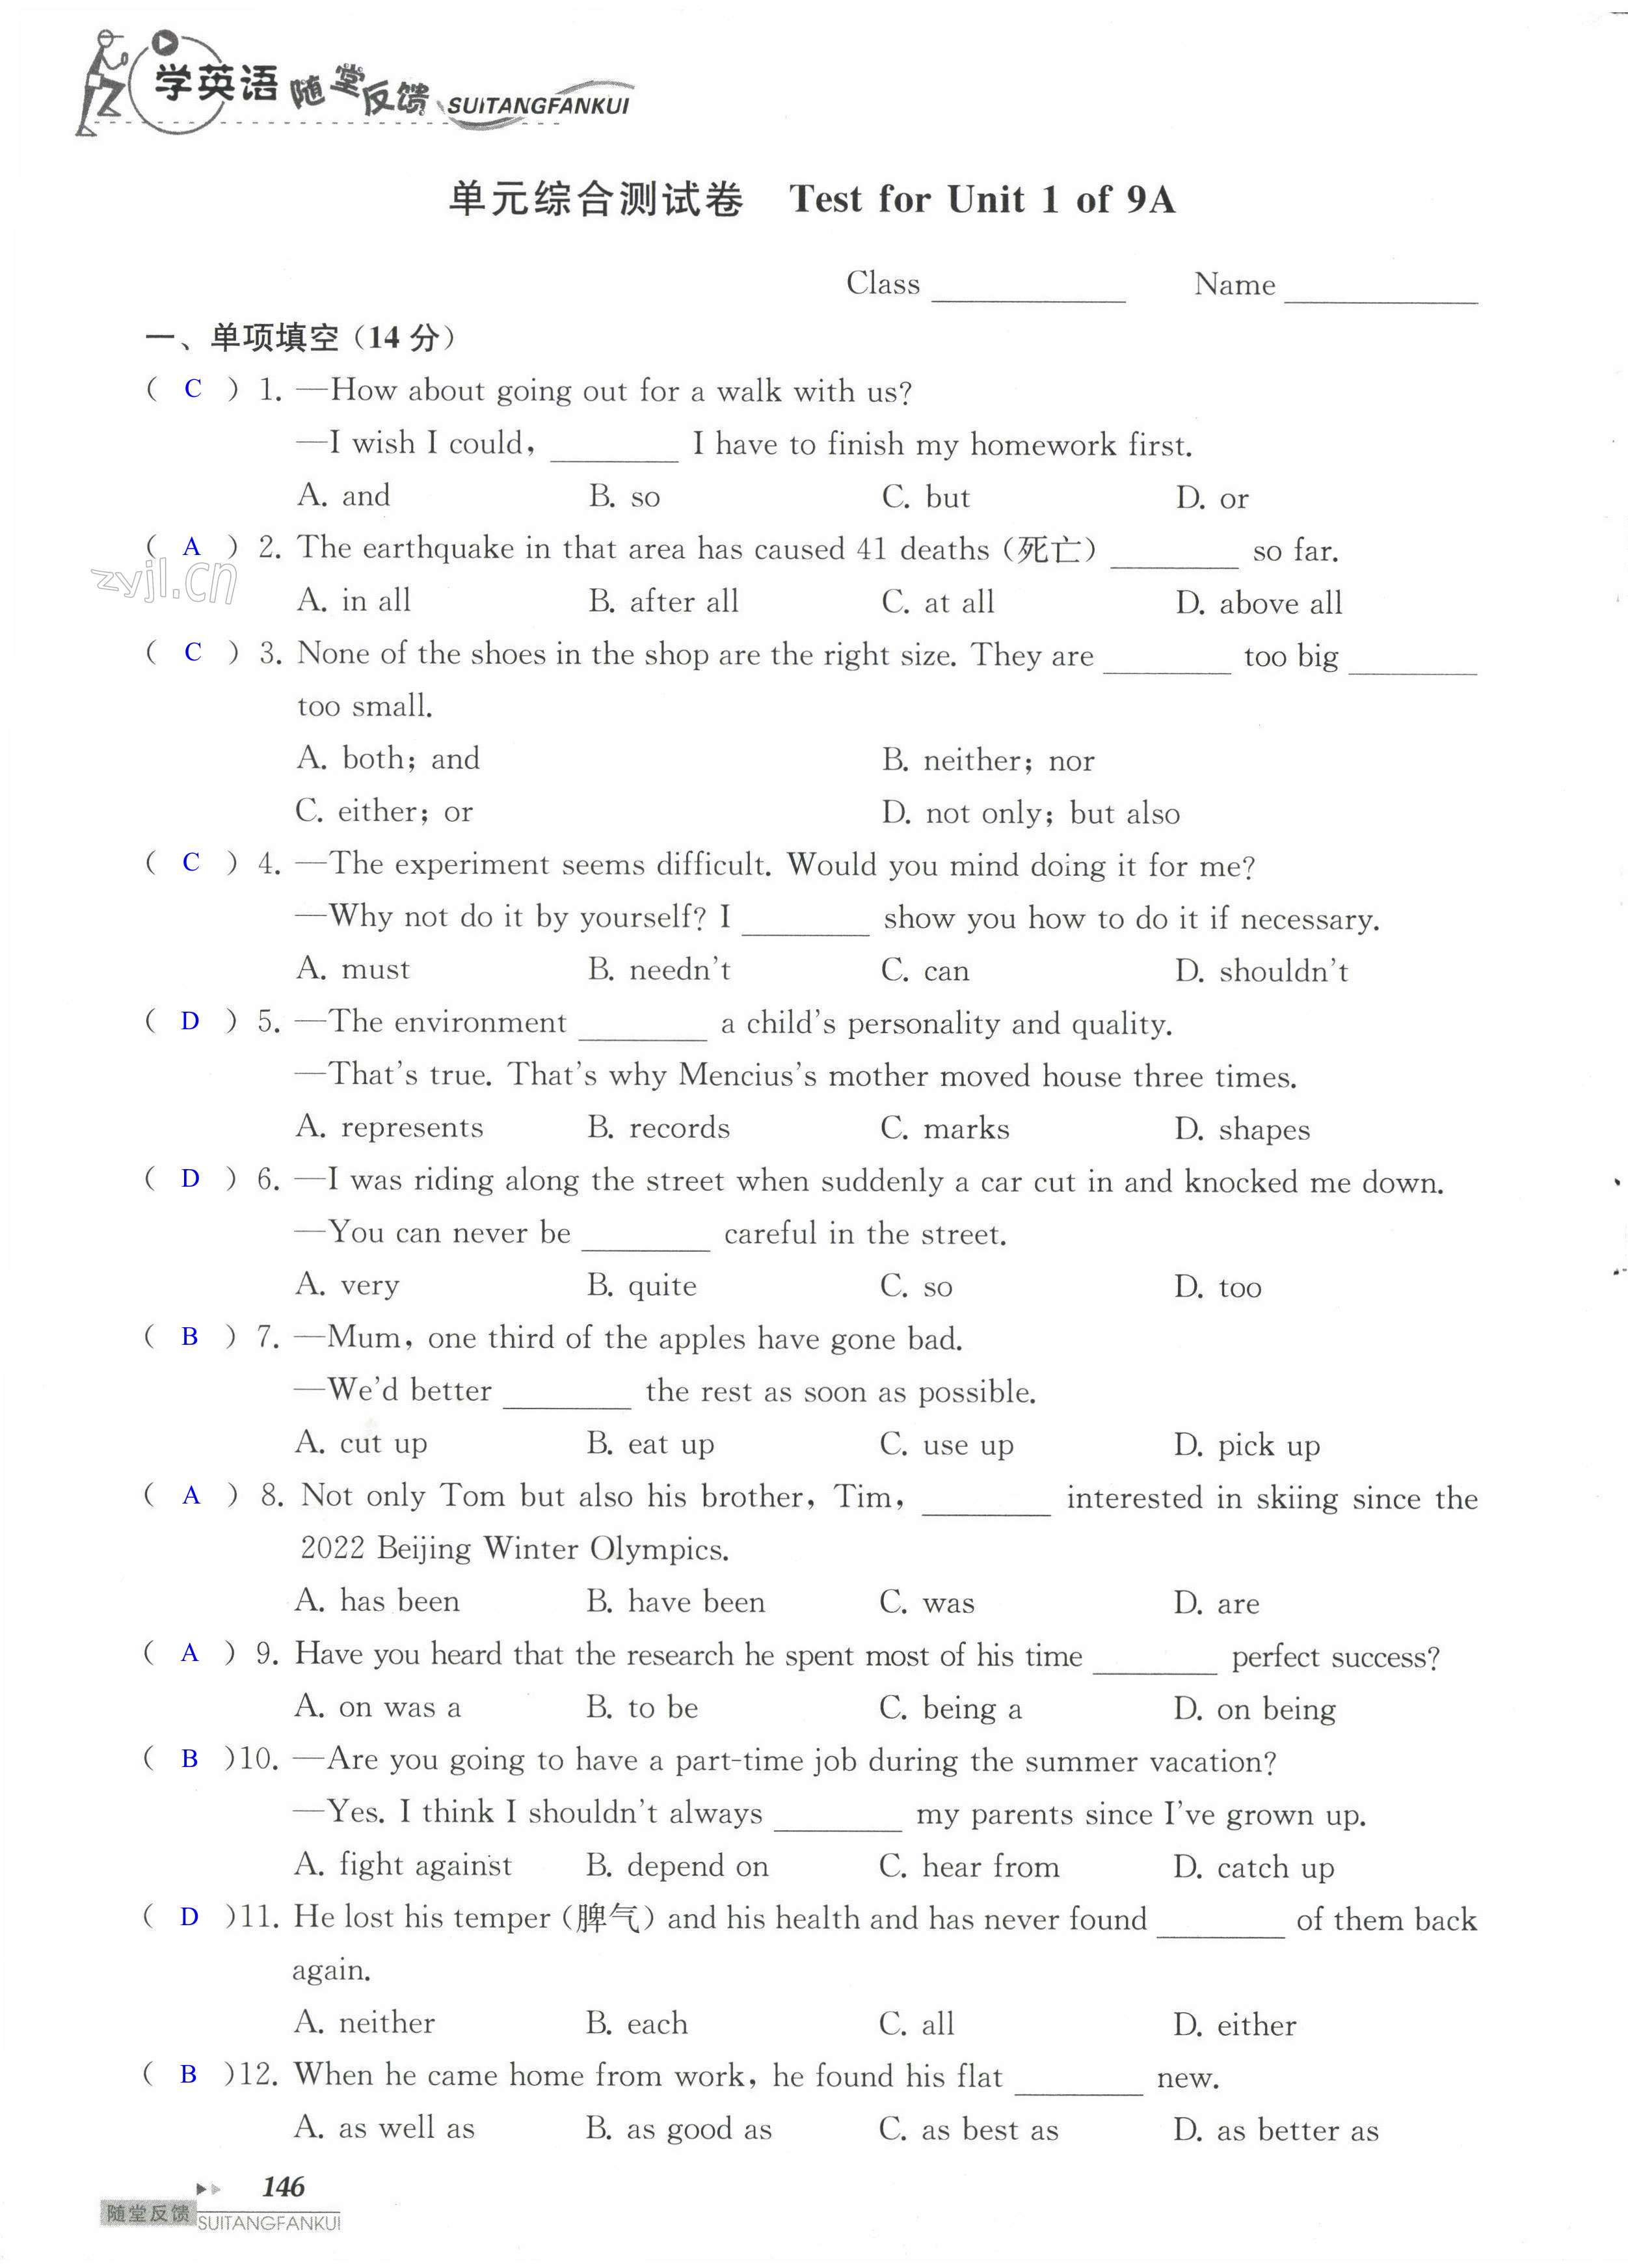 单元综合测试卷 Test for Unit 1 of 9A - 第146页